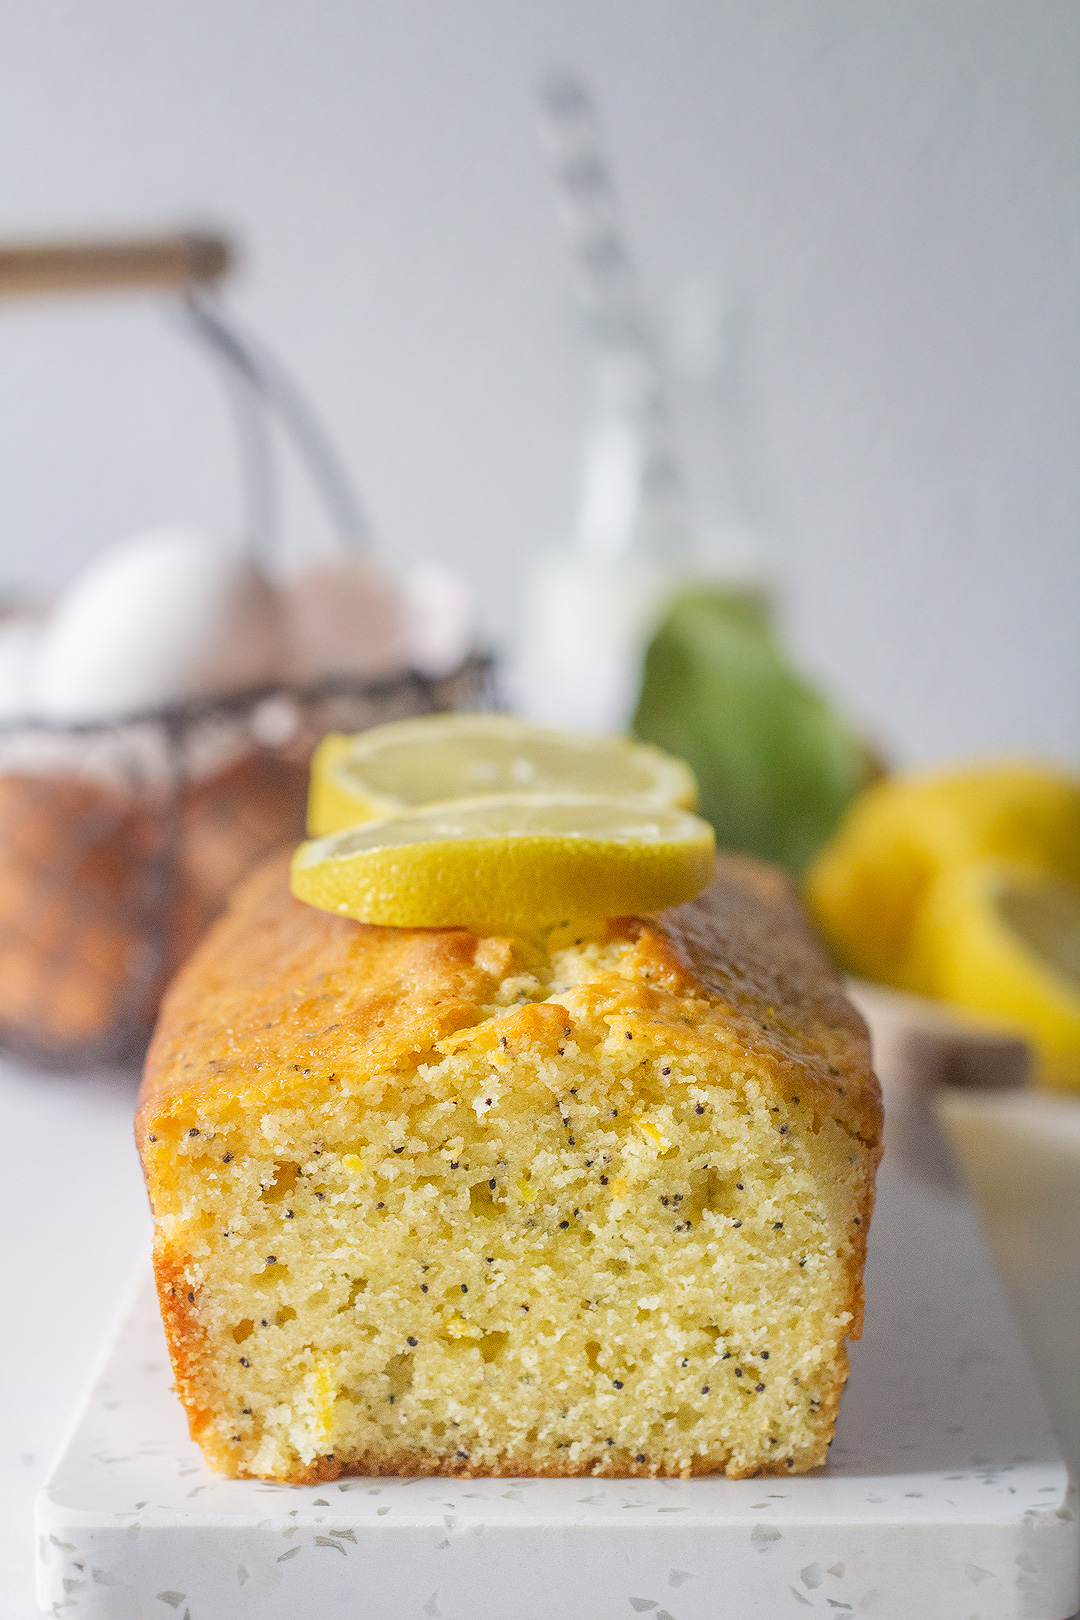 Recette du cake citron et graines de pavot